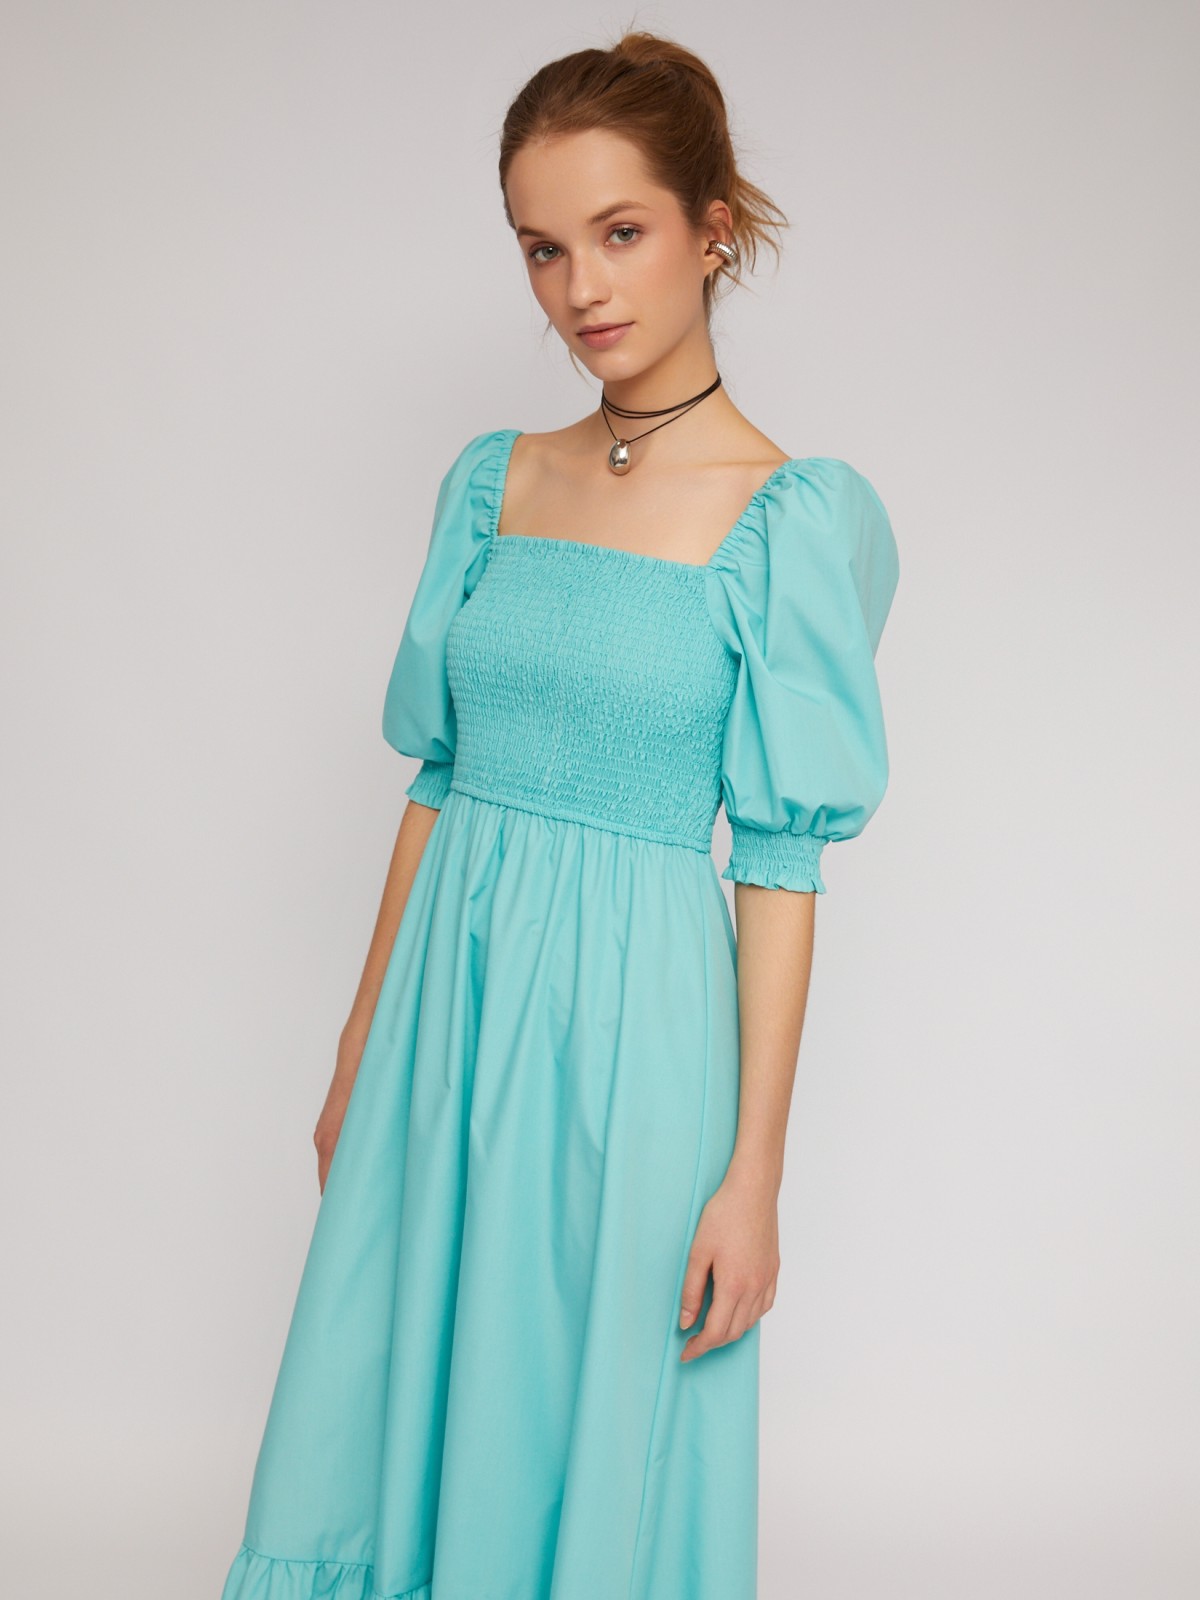 Платье длины макси на резинке с воланом zolla 024248262473, цвет бирюзовый, размер XS - фото 2